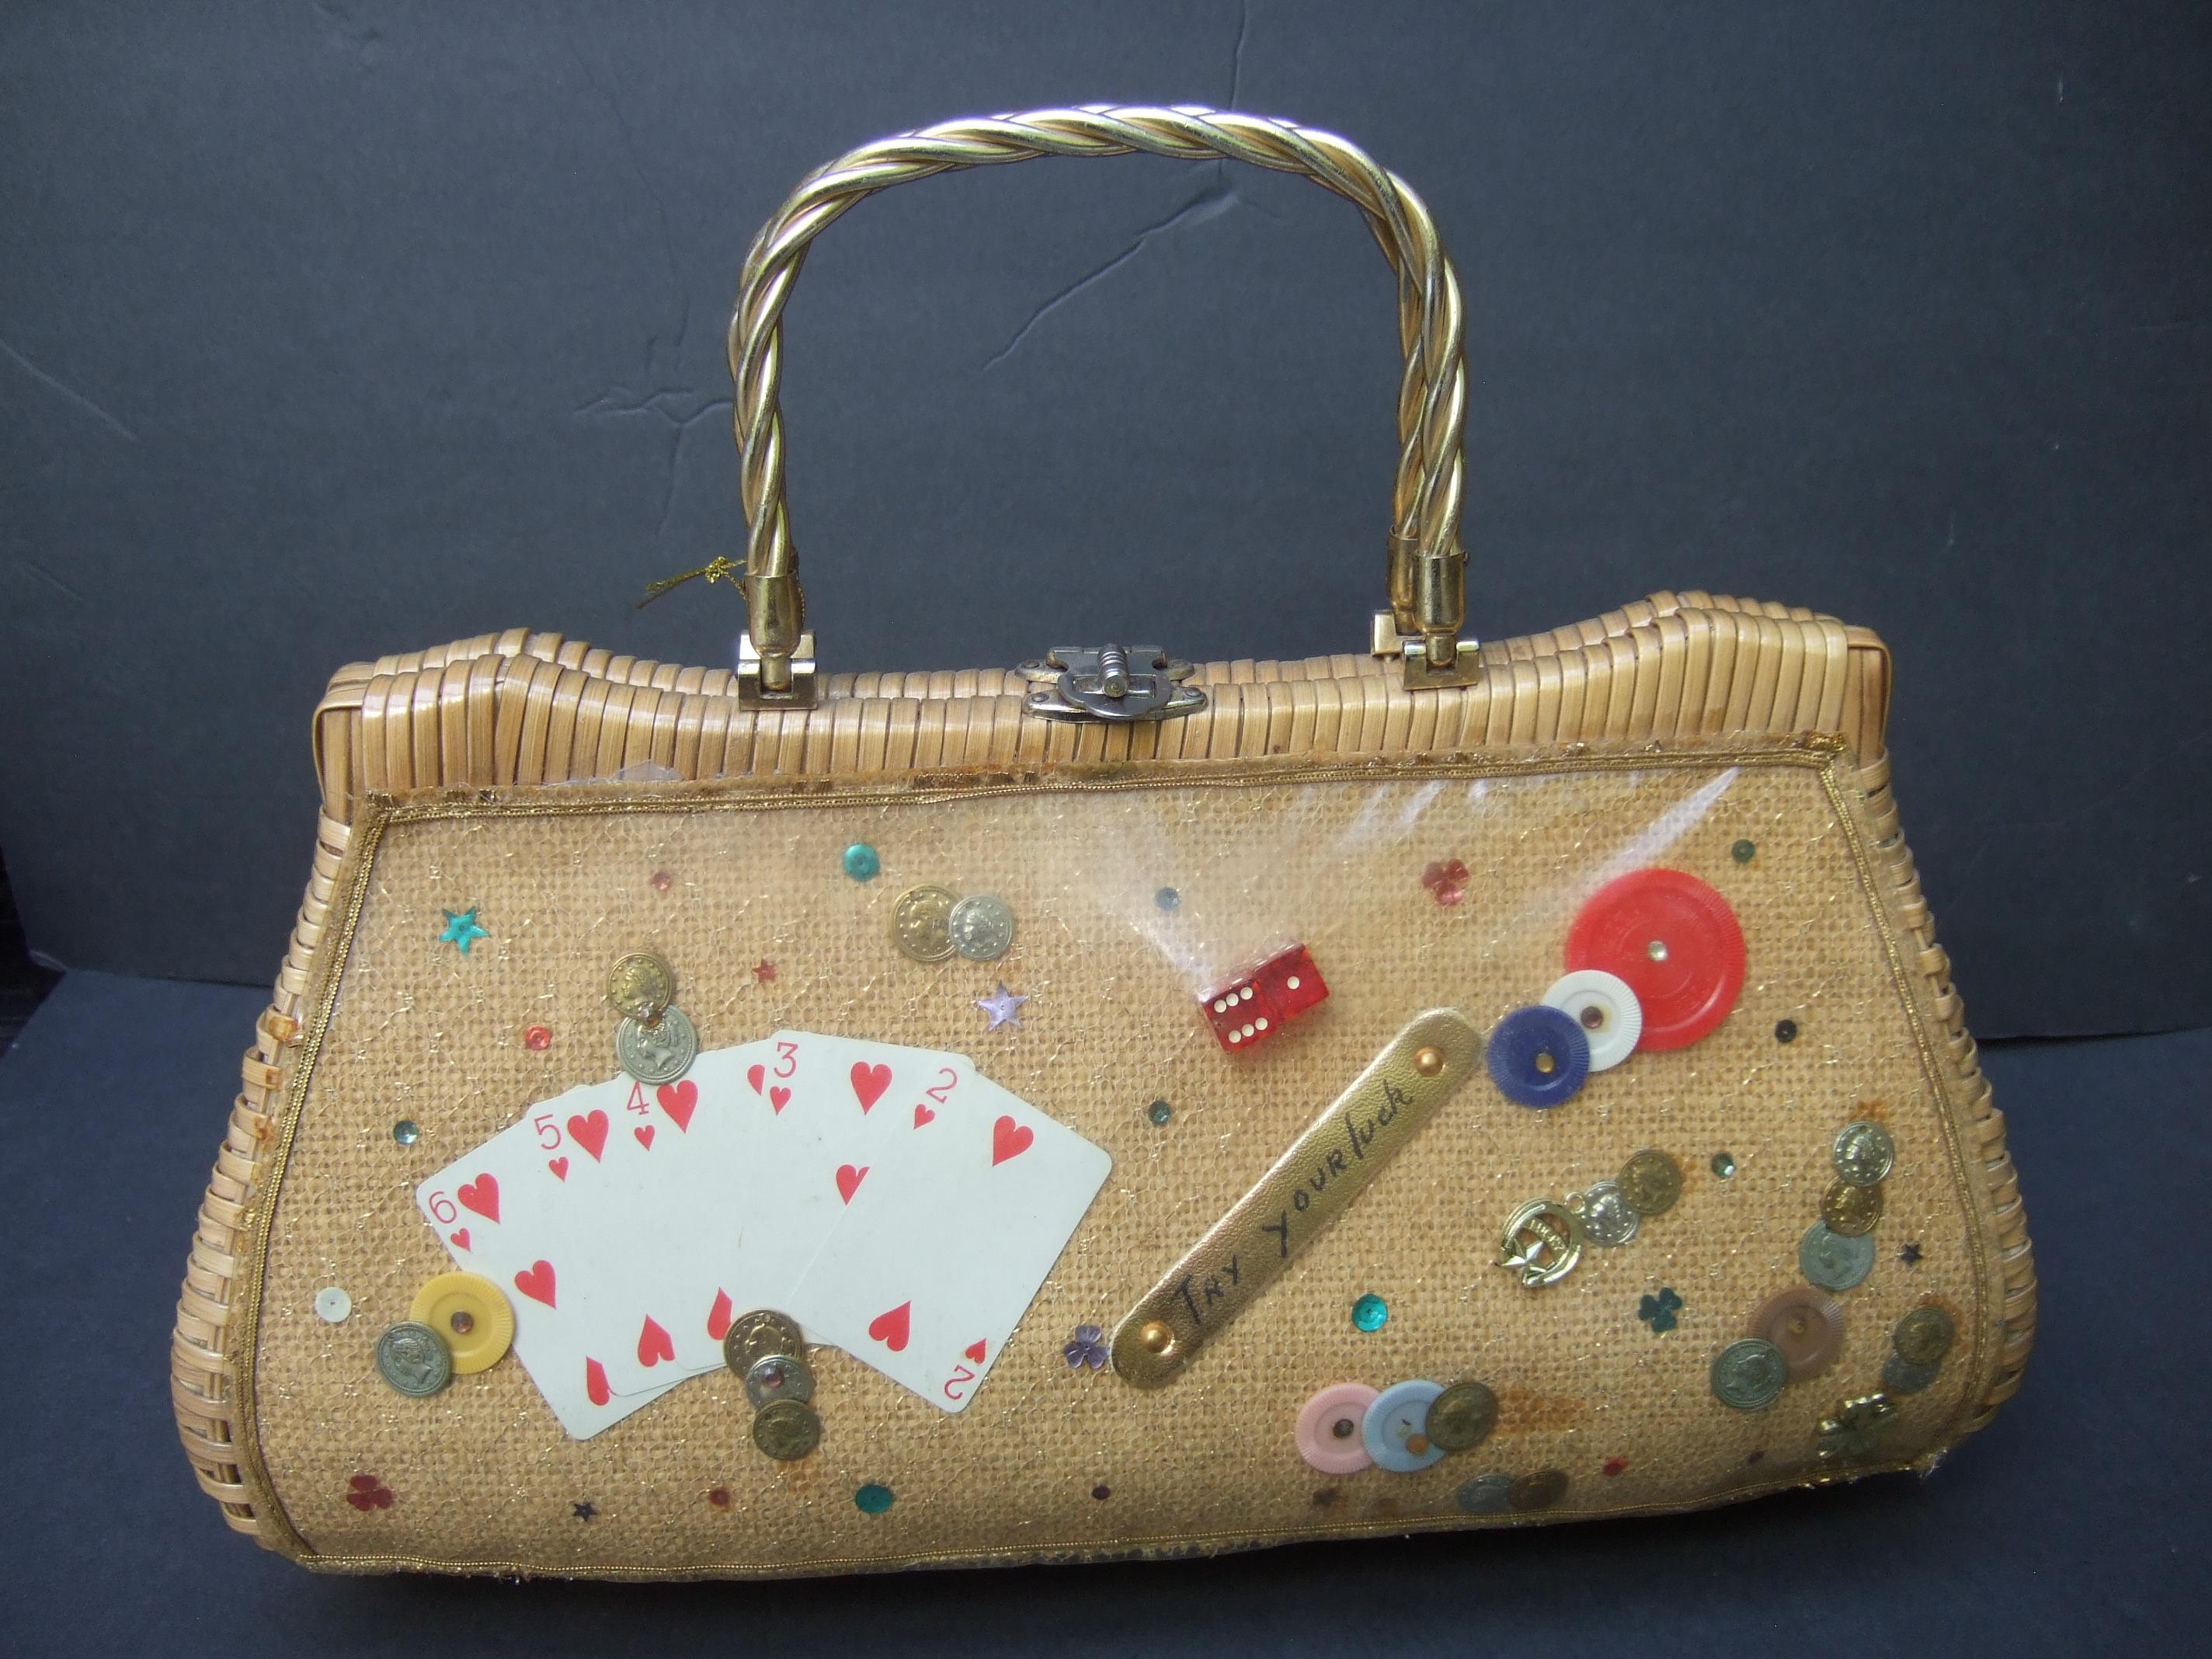 
Skurrile geflochtene Weidenhandtasche mit Retro-Griff um 1960
Die schrullige, lustige Vintage-Handtasche ist mit einer Sammlung von Glücksspiel-Motiven verziert
Artikel; Spielkarten, Würfel, Chips und kleine Metallrepliken von Münzen 

Die